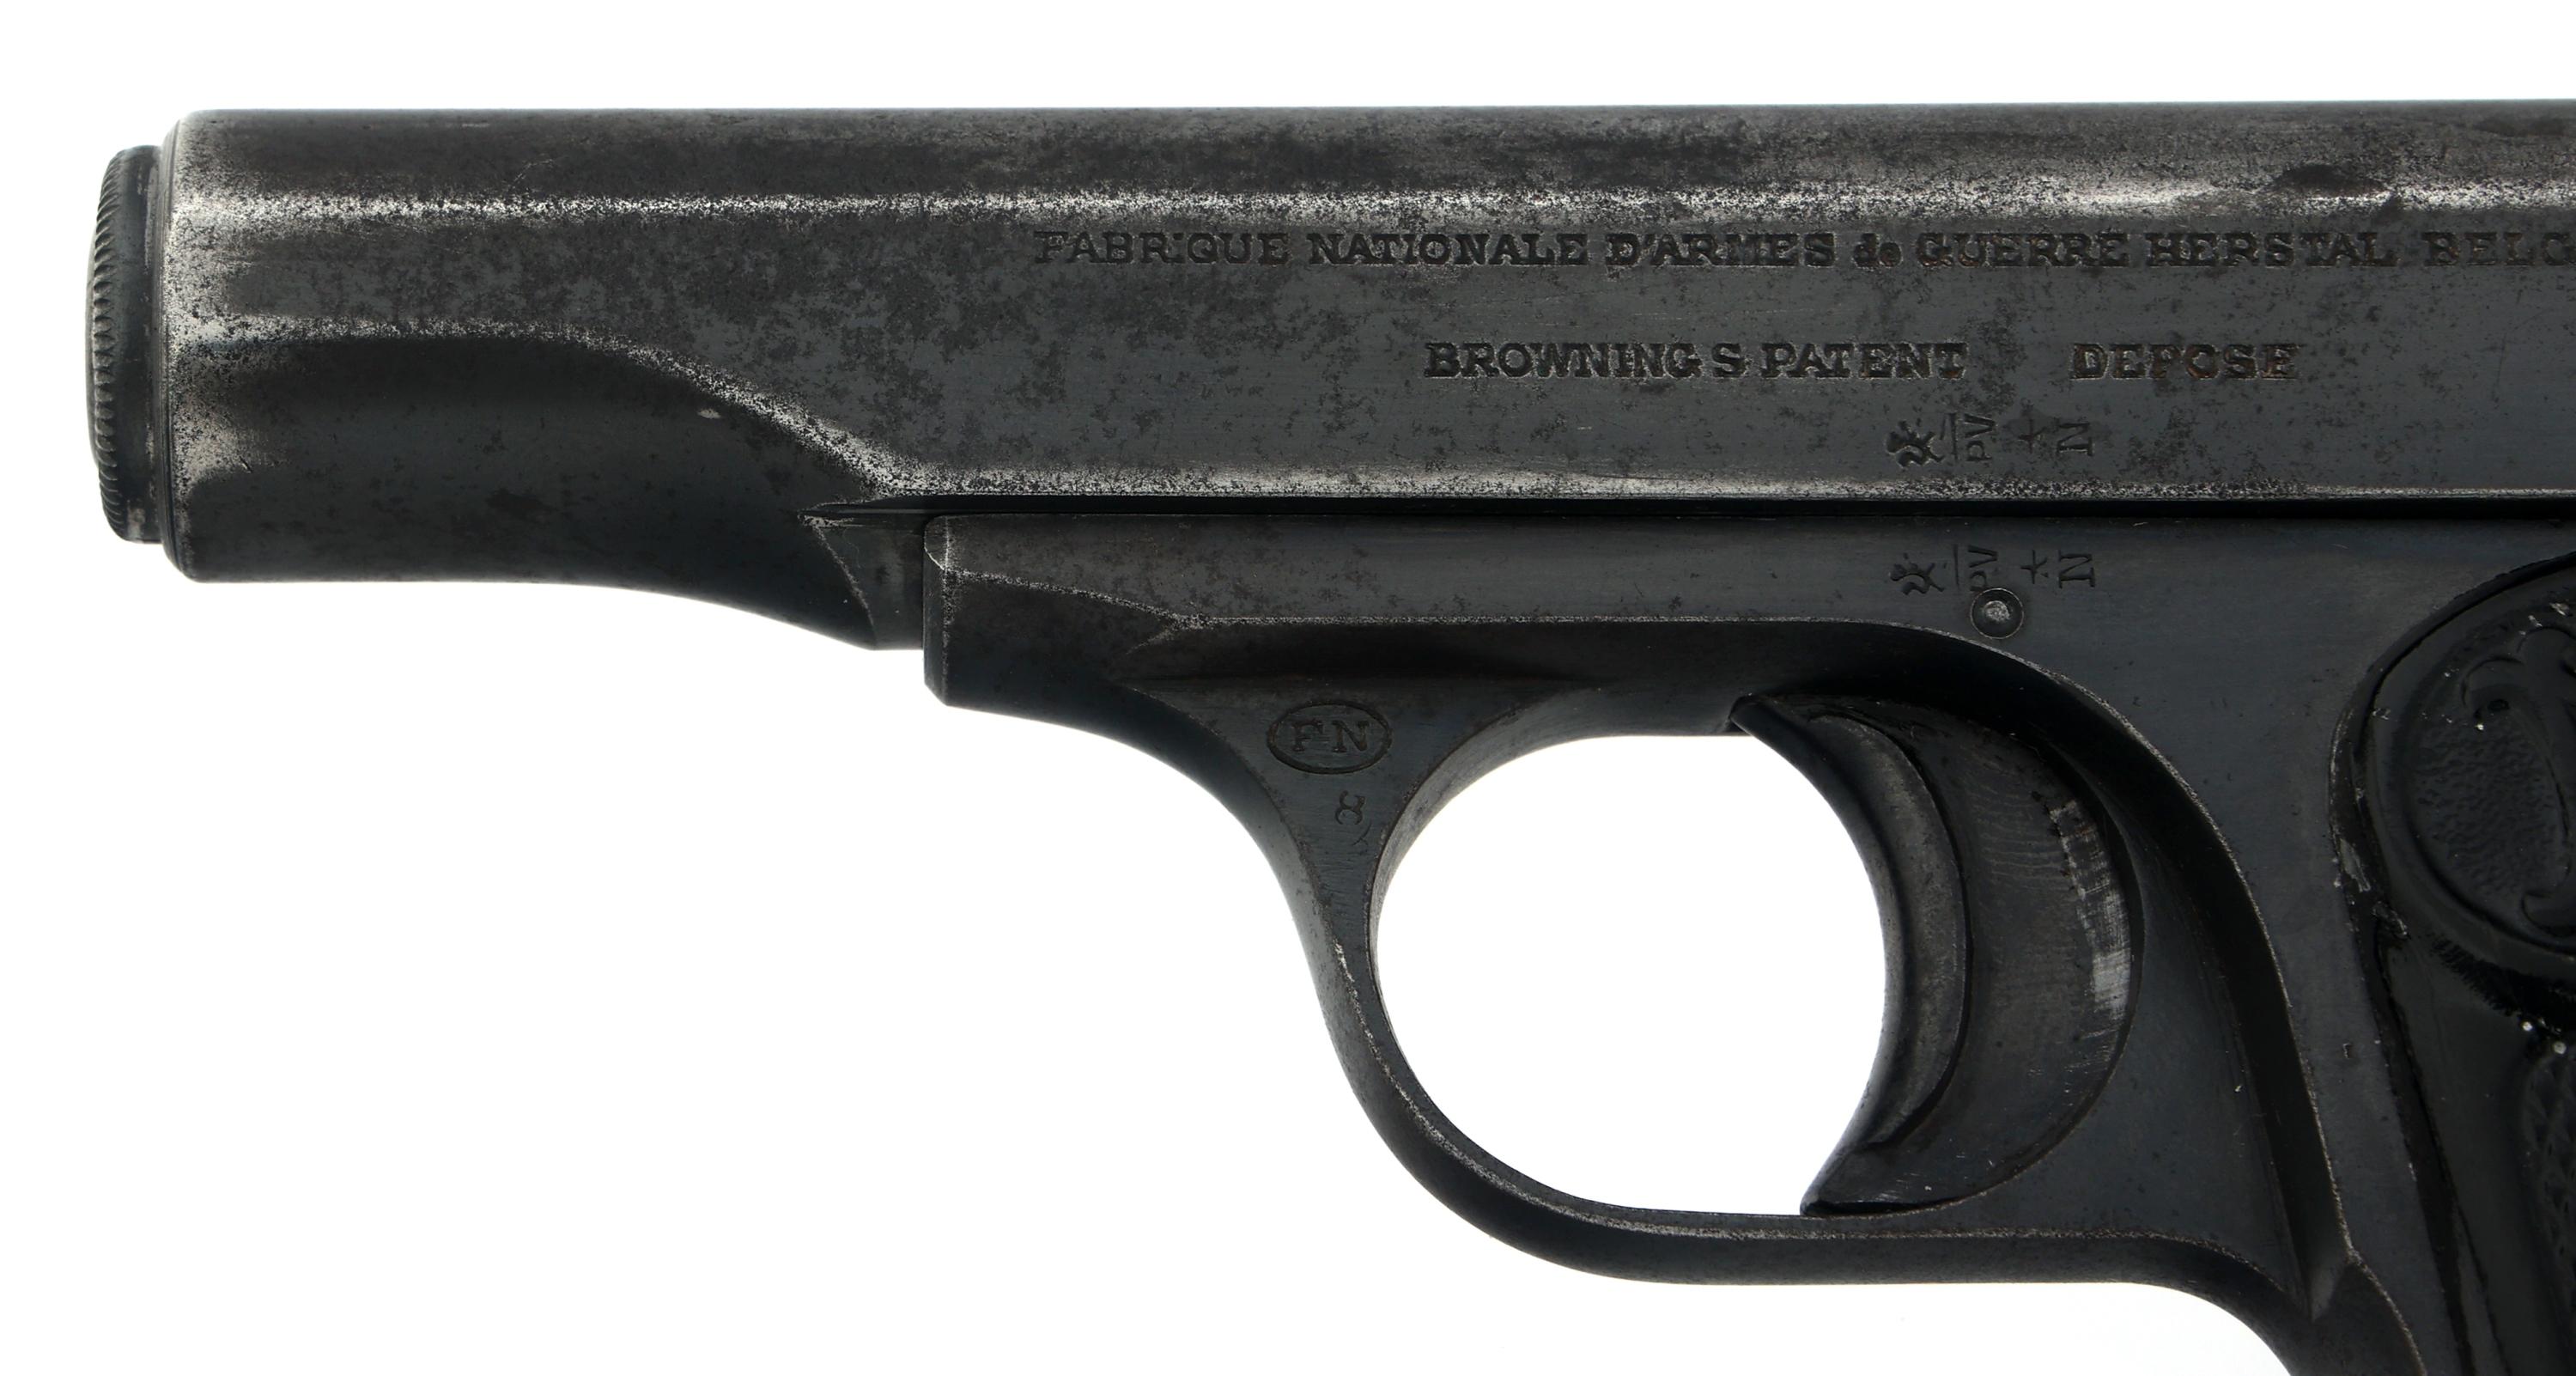 FN MODEL 1910 7.65mm CALIBER SEMI AUTO PISTOL